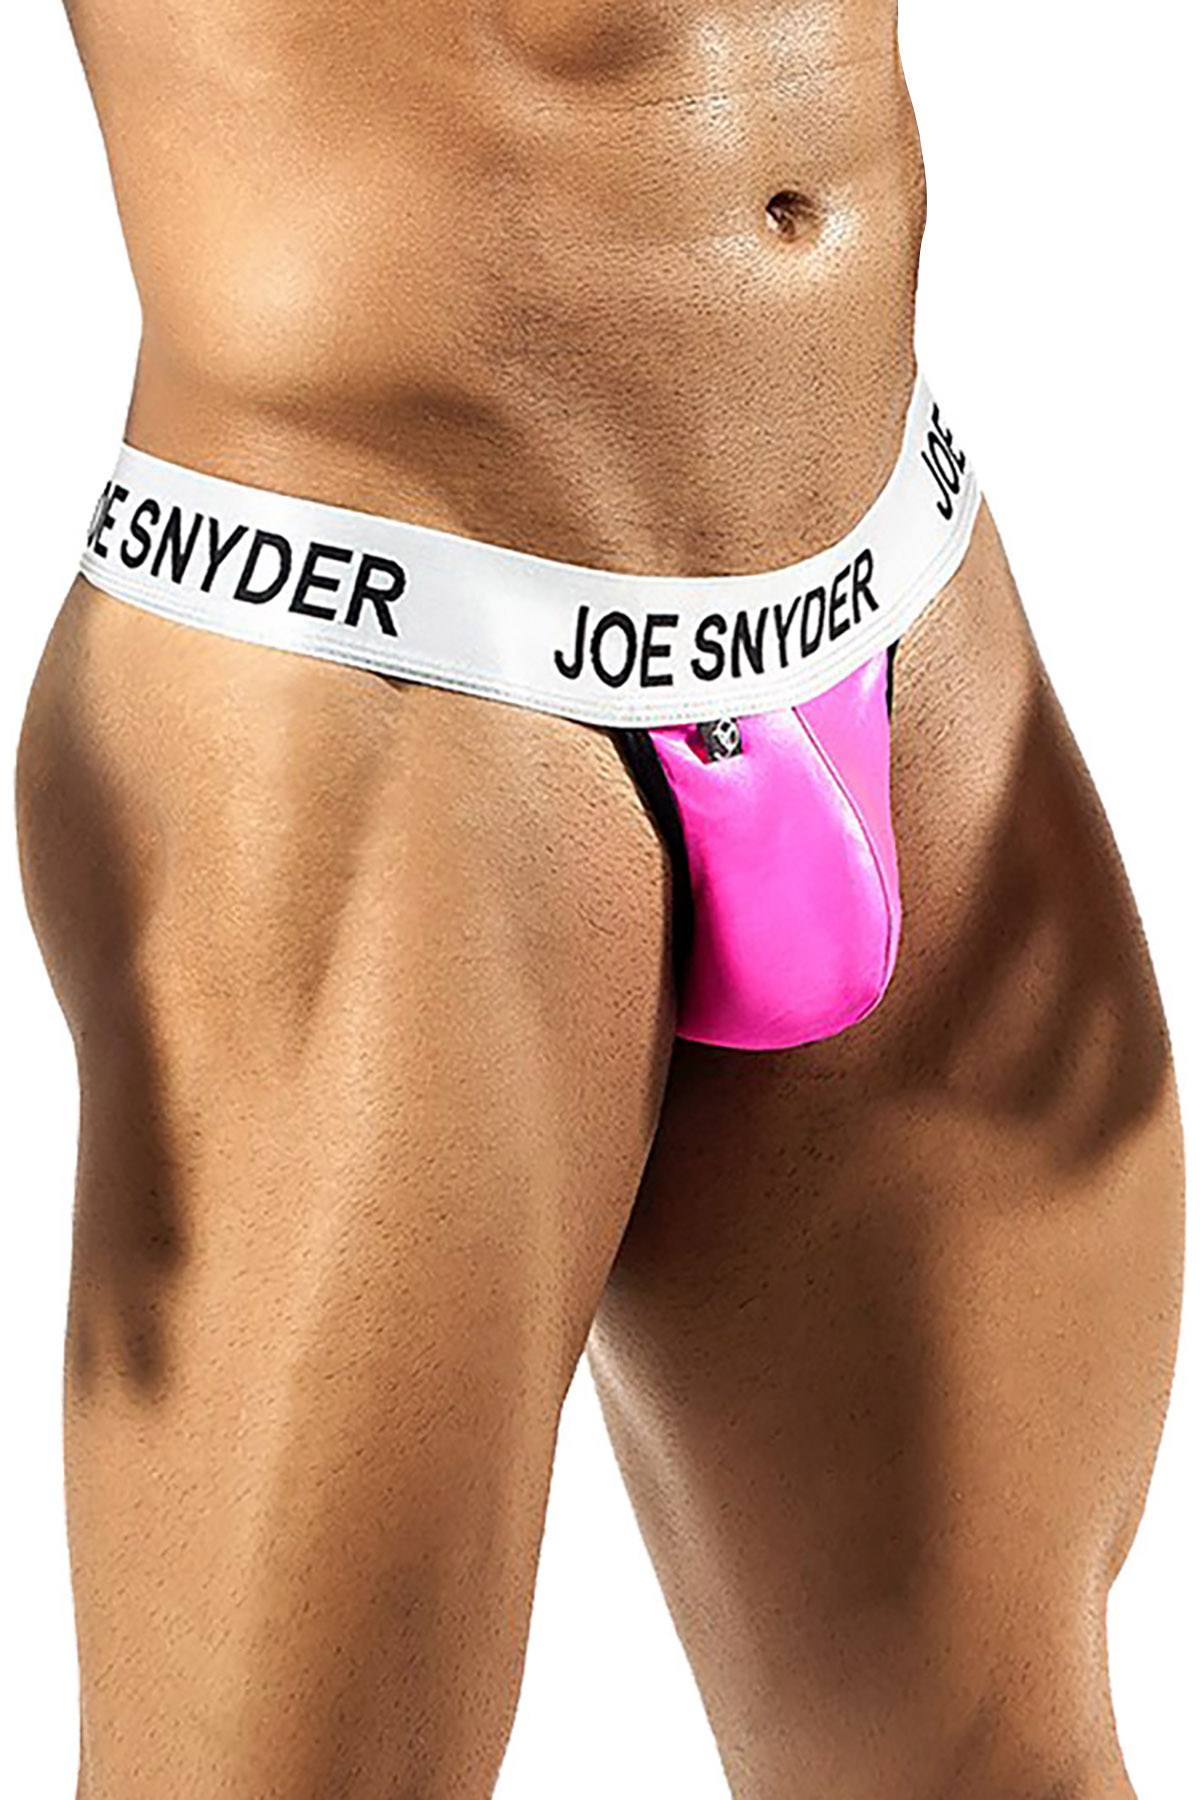 Joe Snyder Pink Activewear V-Thong